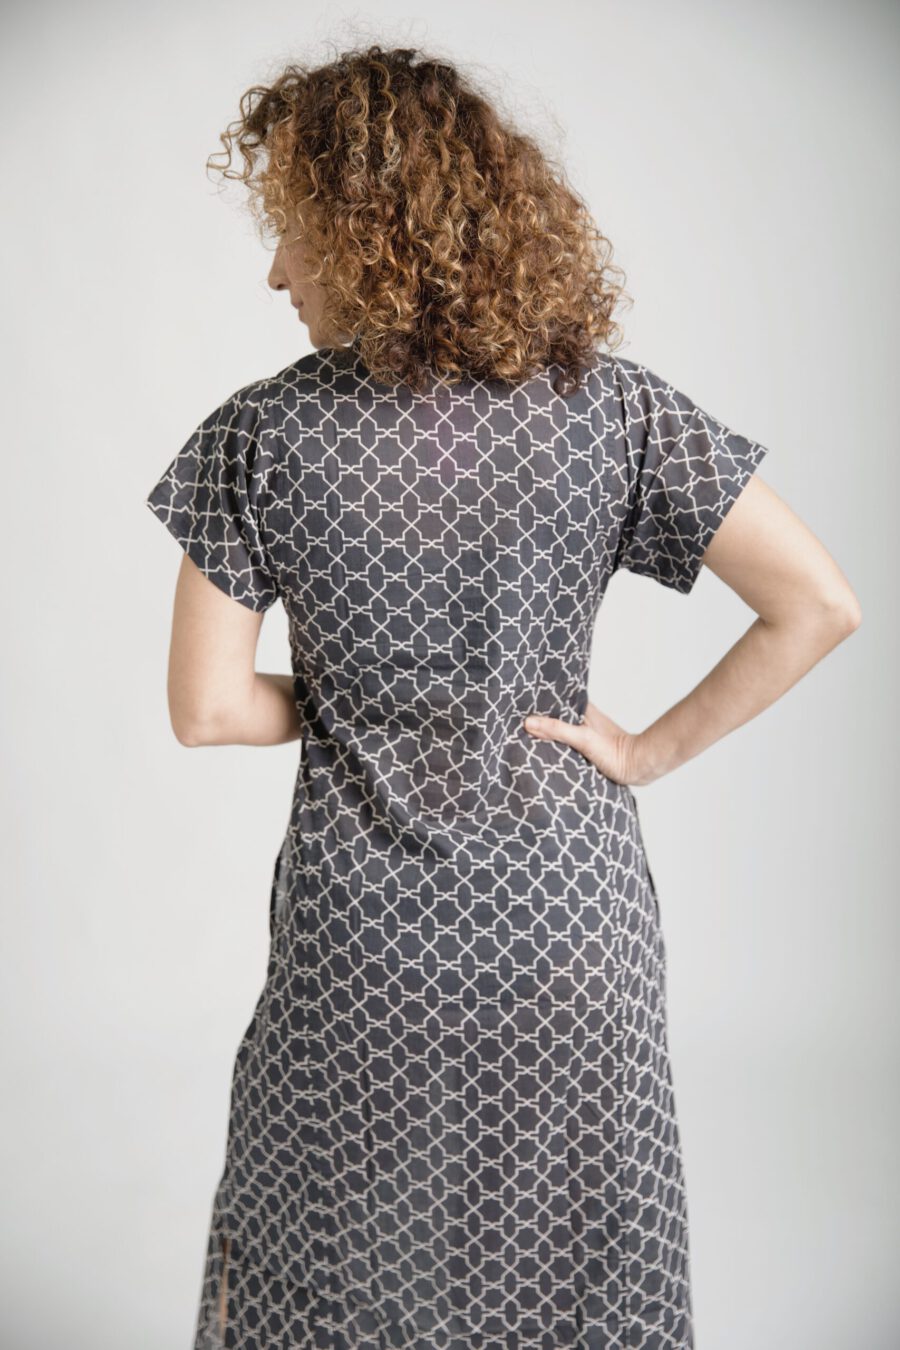 גלביה לנשים | גלבייה בעיצוב ייחודי – הדפס סקנדינבי, שמלה שחורה עם הדפס גיאומטרי